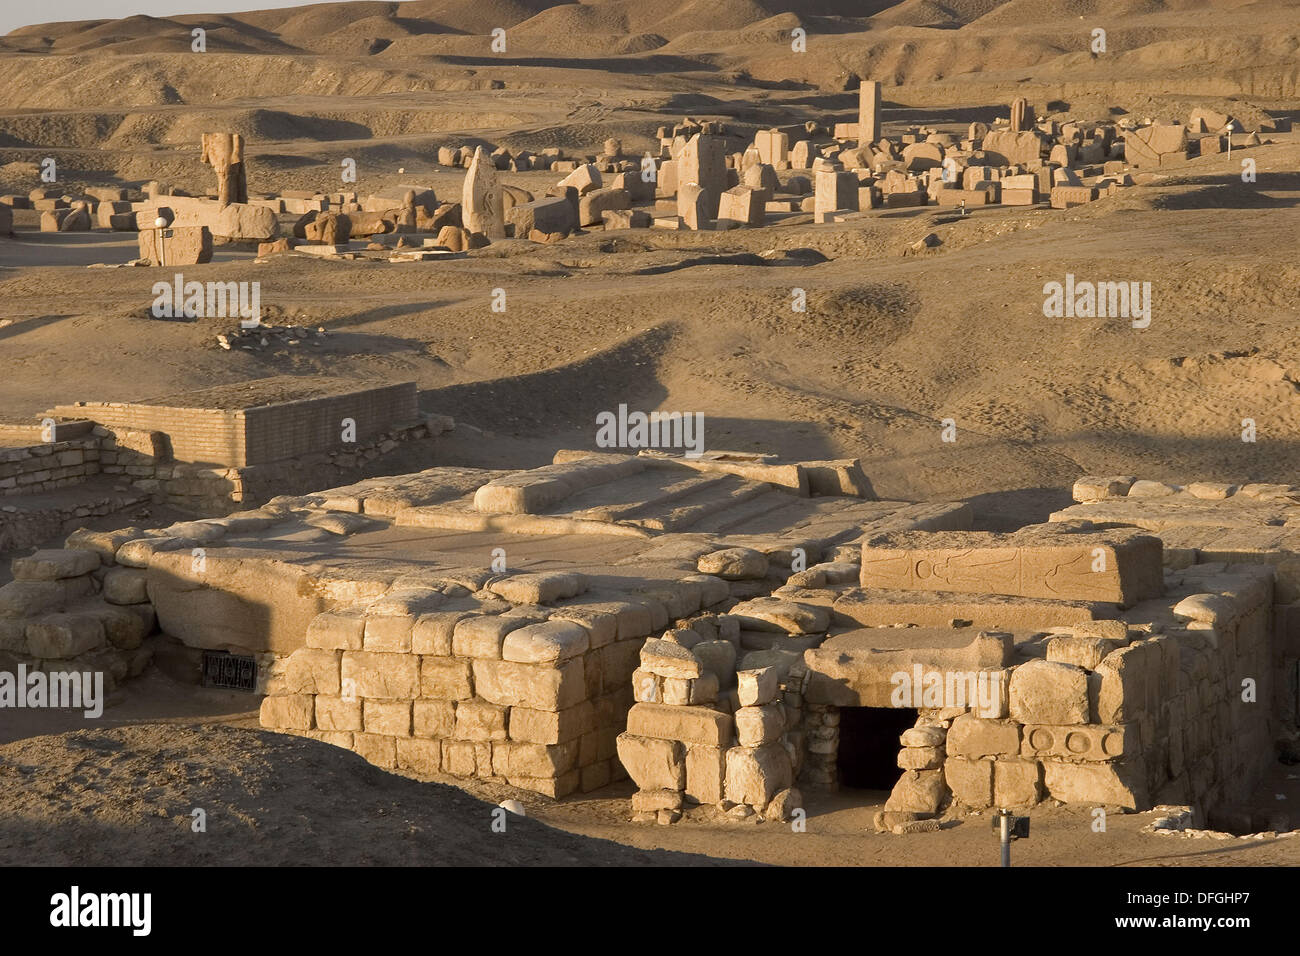 Tumbas reales con el templo dedicado a Amón en el fondo, las ruinas de Tanis. Egipto Foto de stock